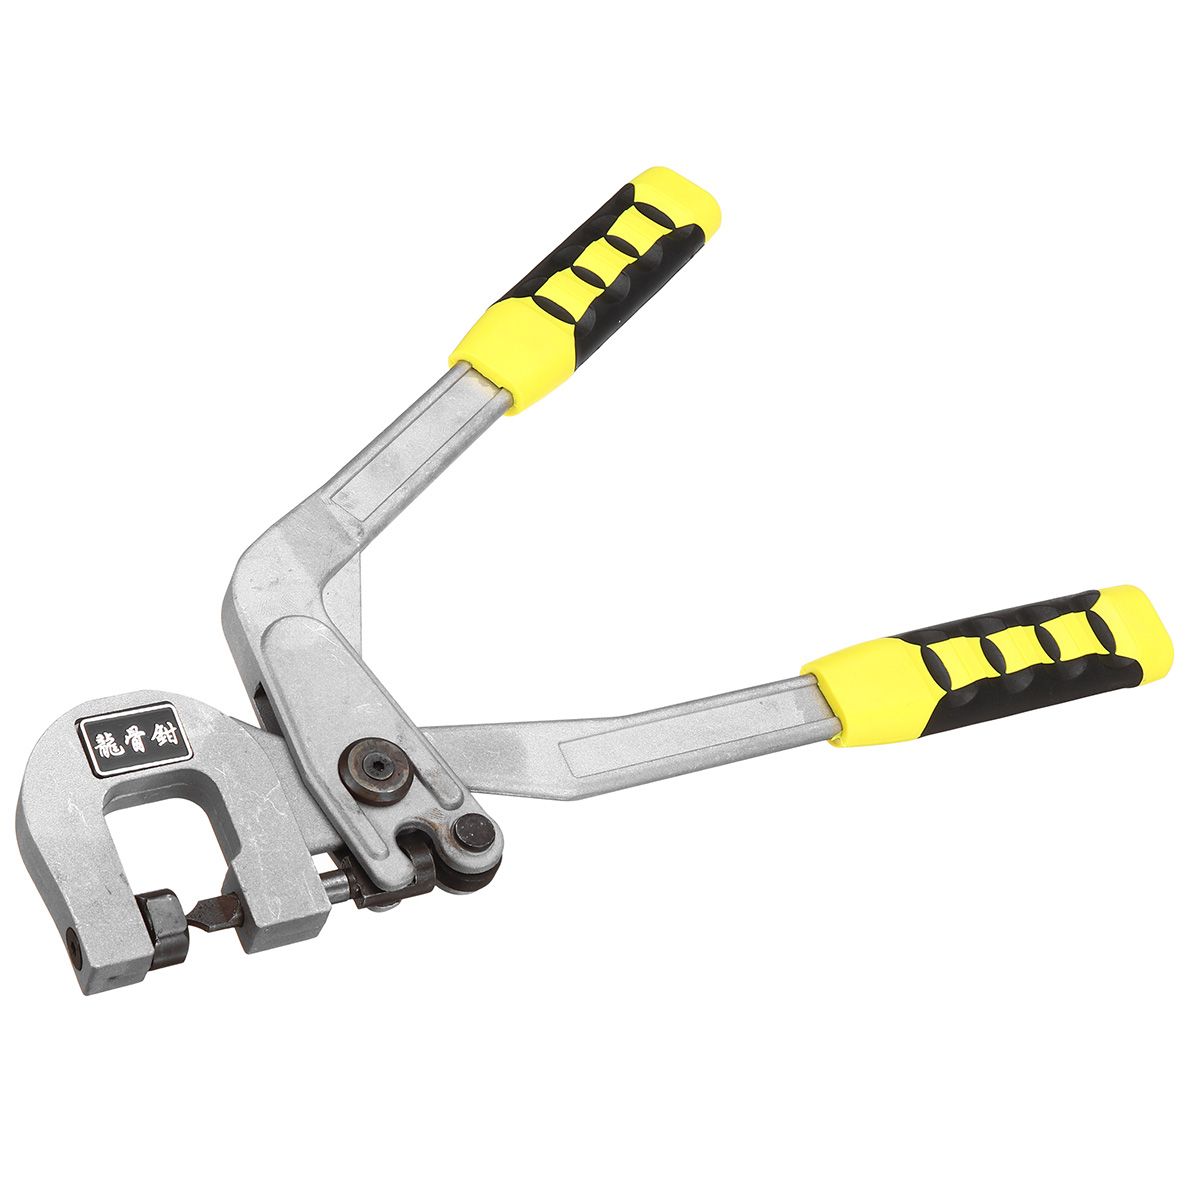 Alloy-Keel-Pliers-Stud-Crimper-Metal-Punch-Lock-Hand-Drywall-Tools-1724193